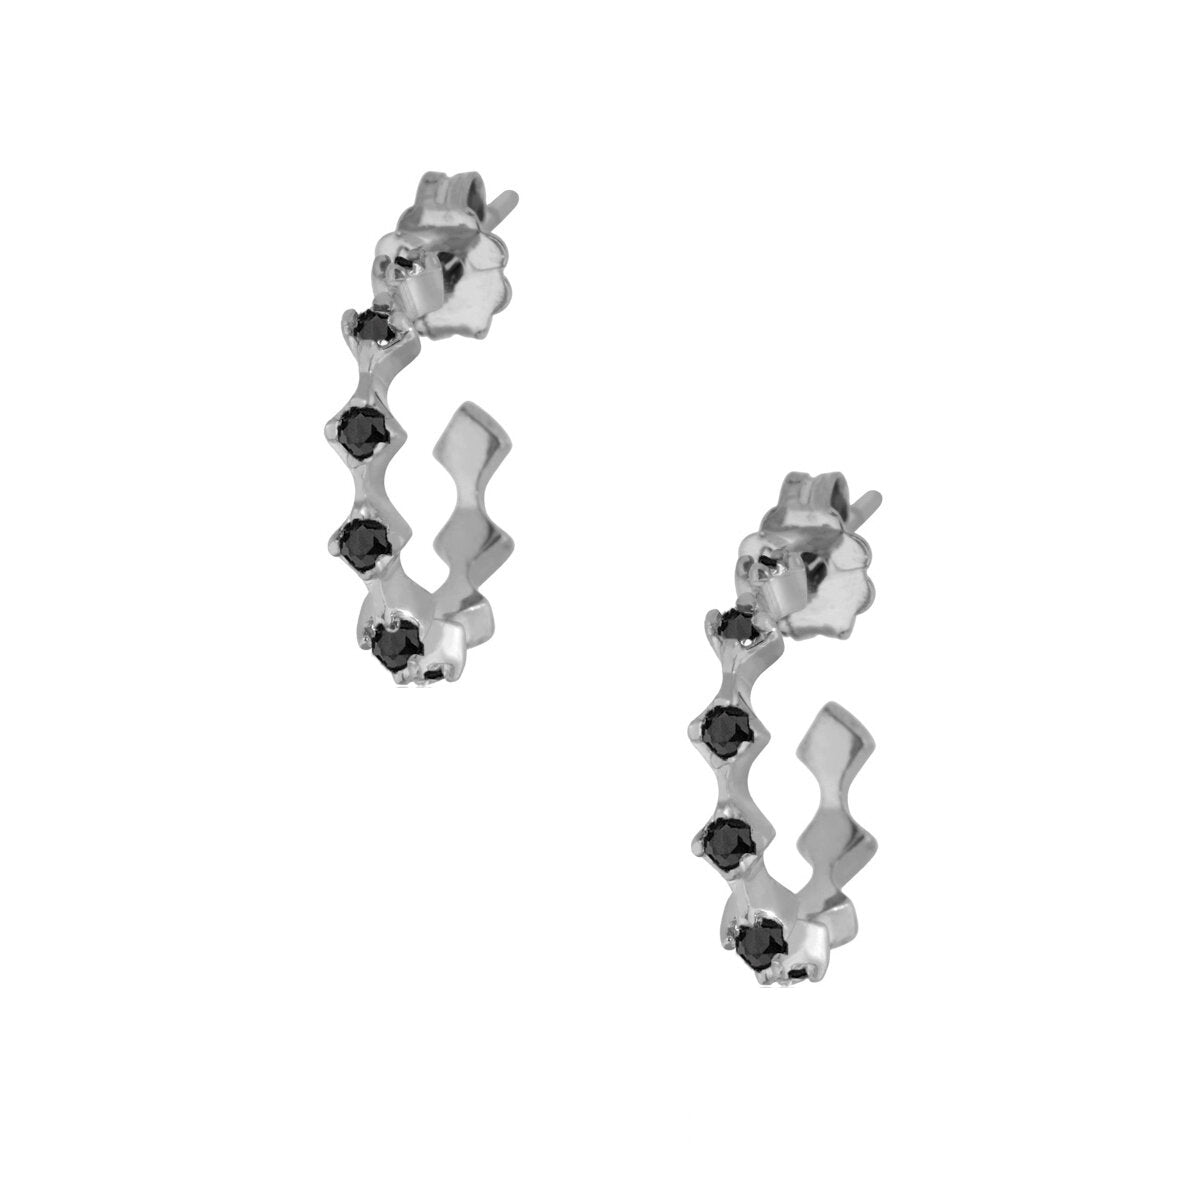 Rhombus Hoops Pair Earrings - Black Rhodium Plated